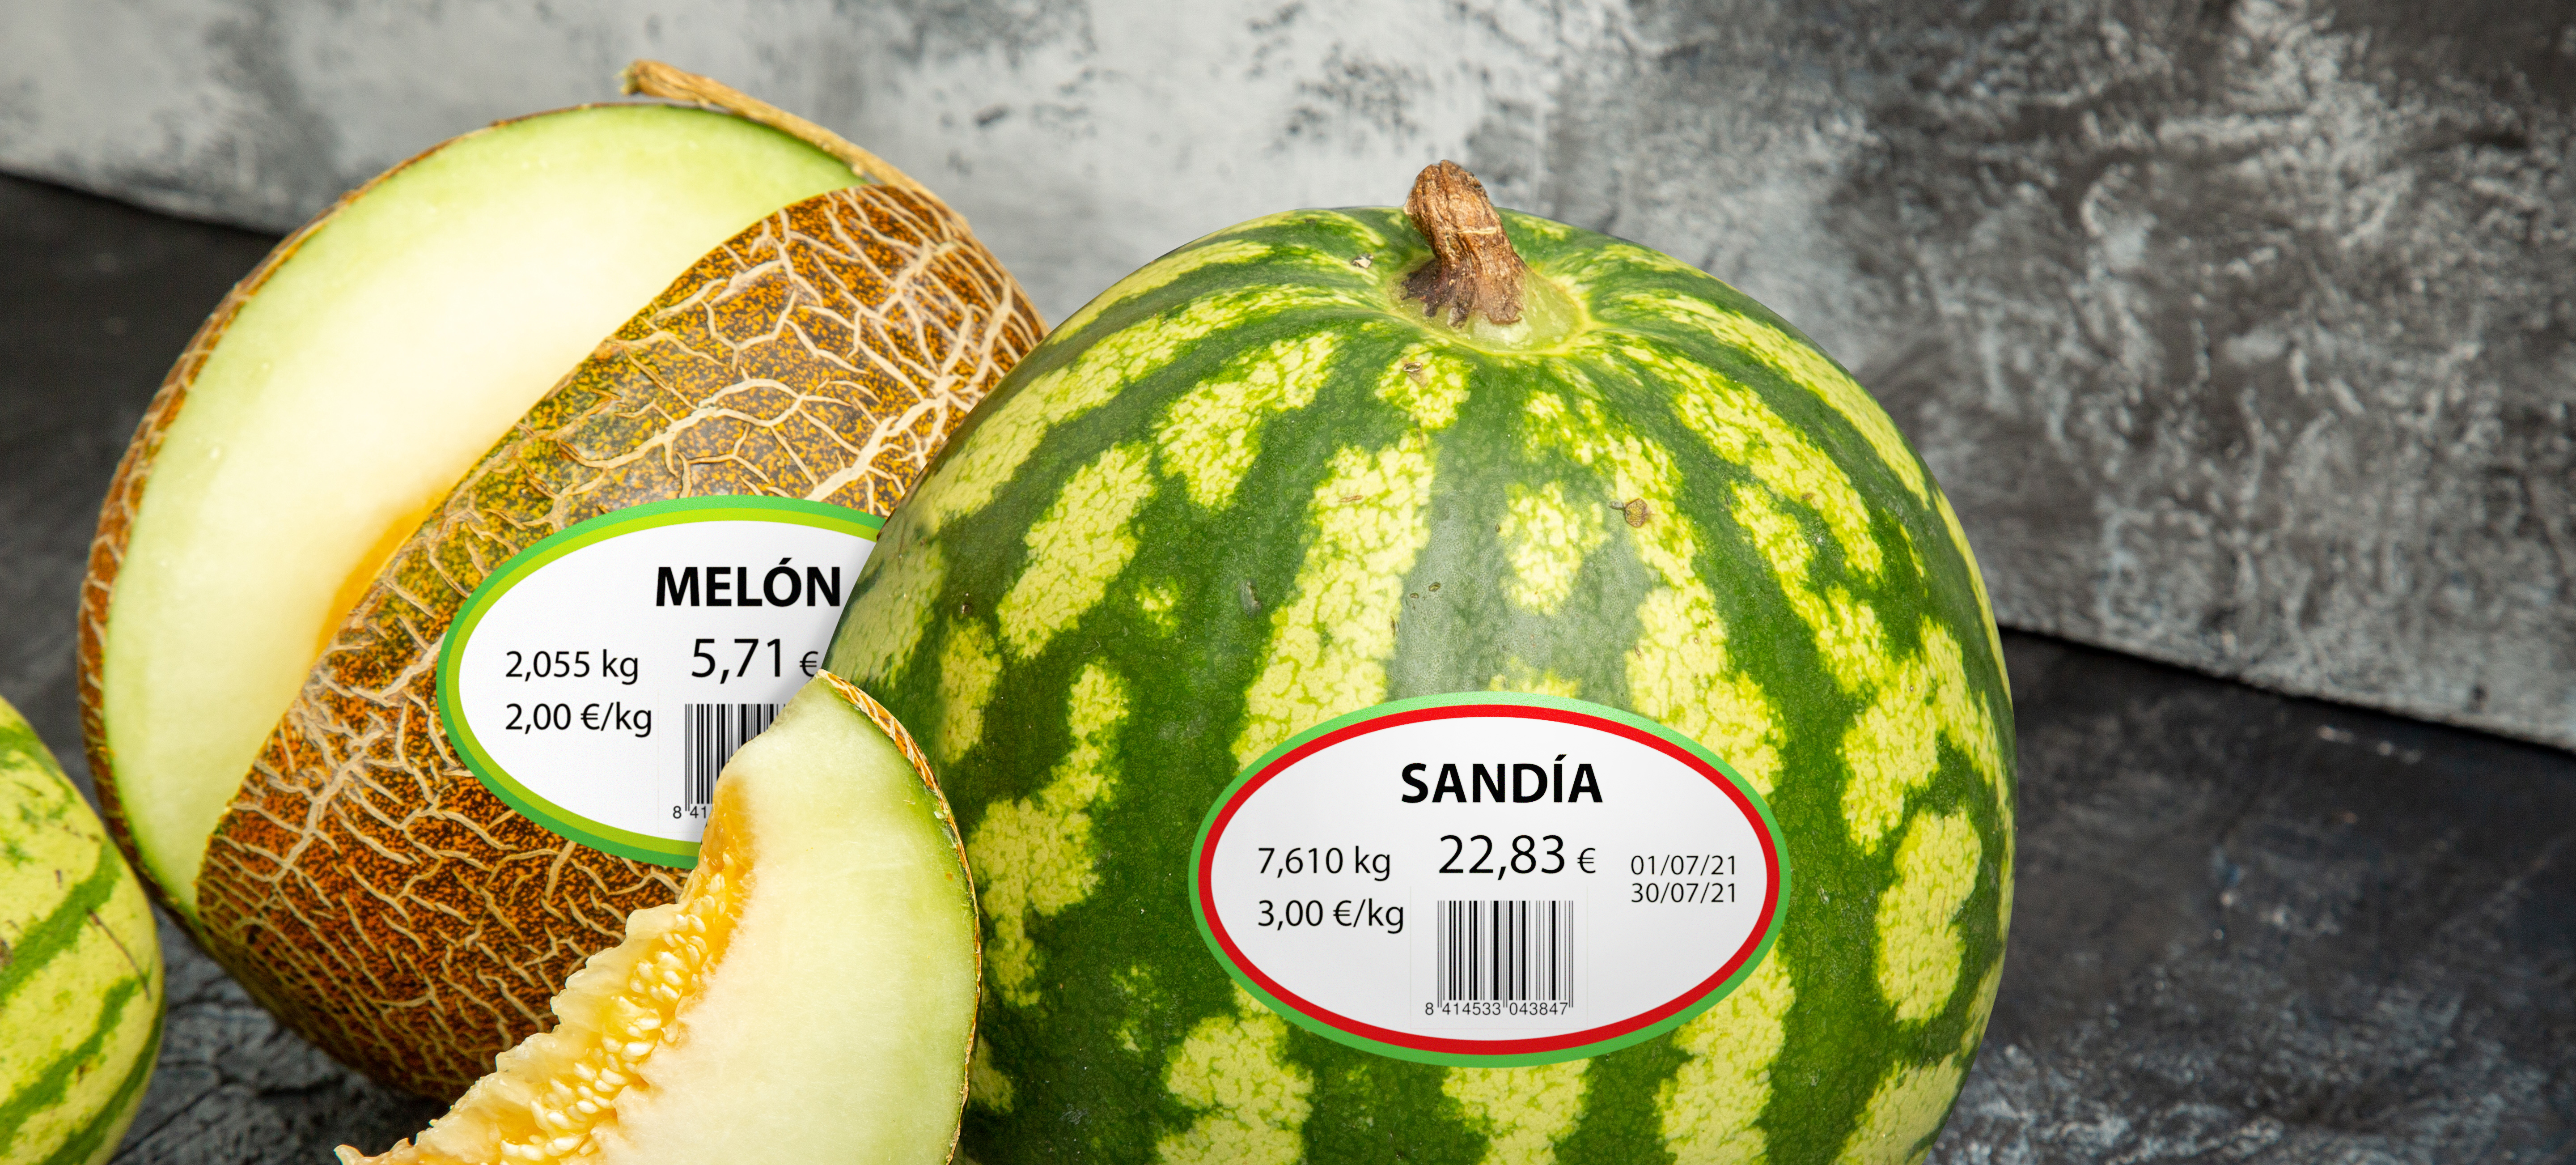 Comienza la temporada y nosotros tenemos el equipo automático de pesaje y etiquetado ideal para melones y sandías